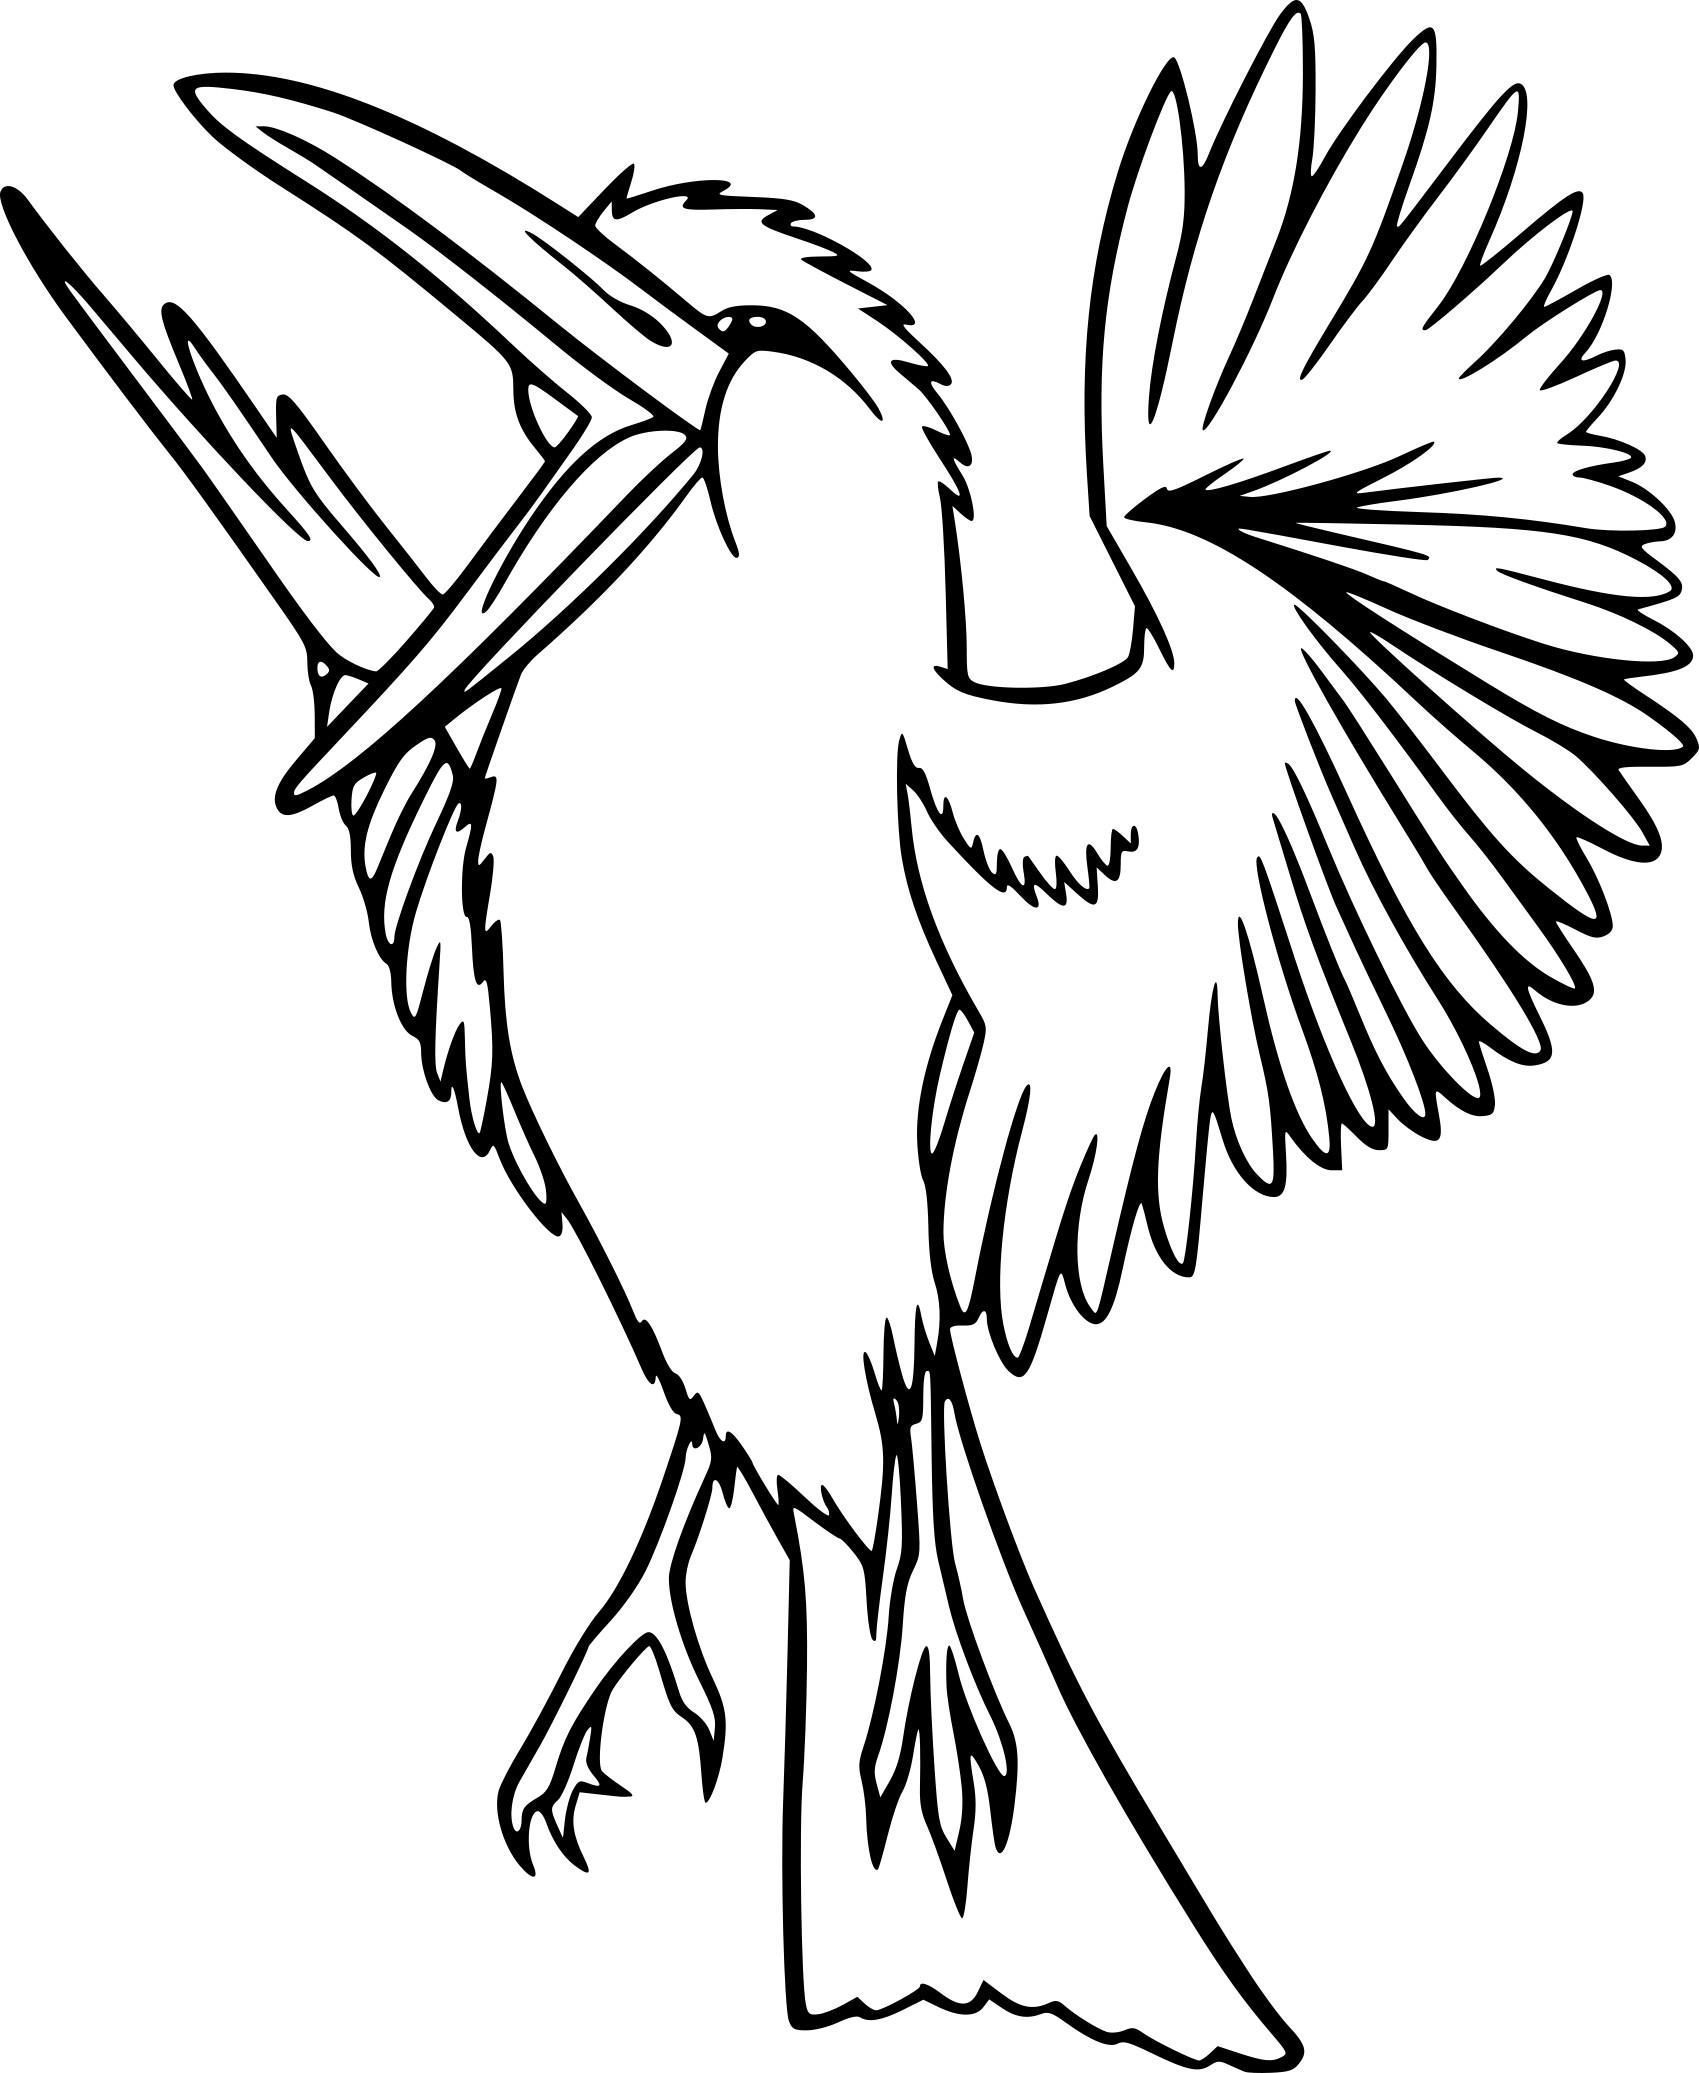 Coloriage Imprimer Oiseaux Exotiques - Coloriage Imprimer concernant Coloriage Oiseaux,